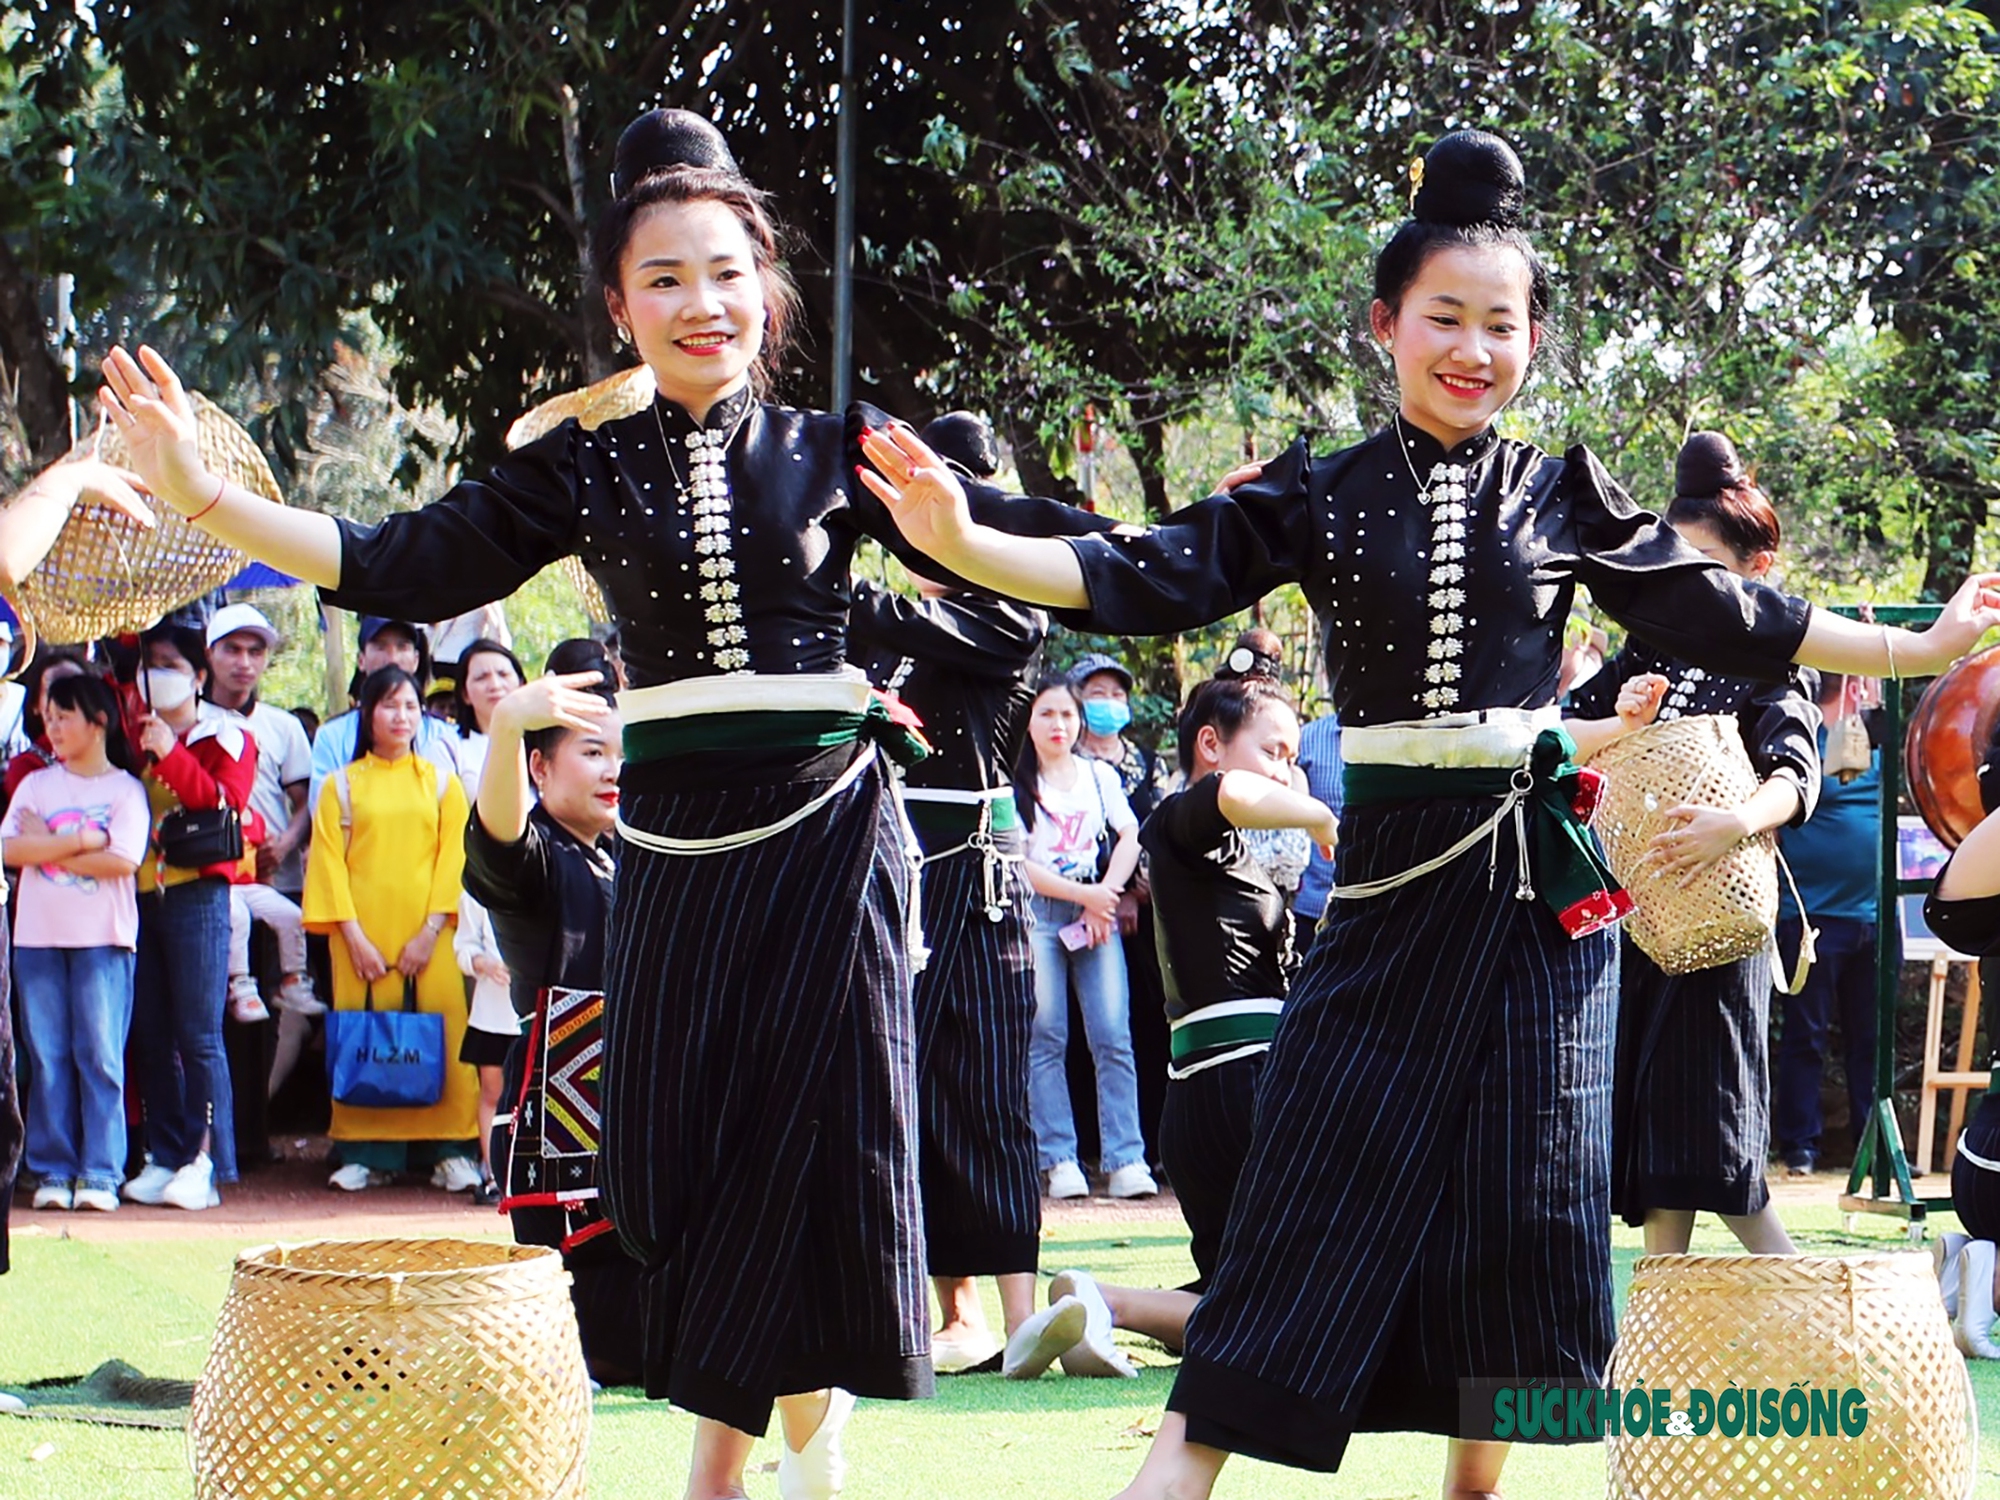 Mê mẩn điệu múa xòe Thái của các cô gái đến từ tỉnh Sơn La - Ảnh 7.